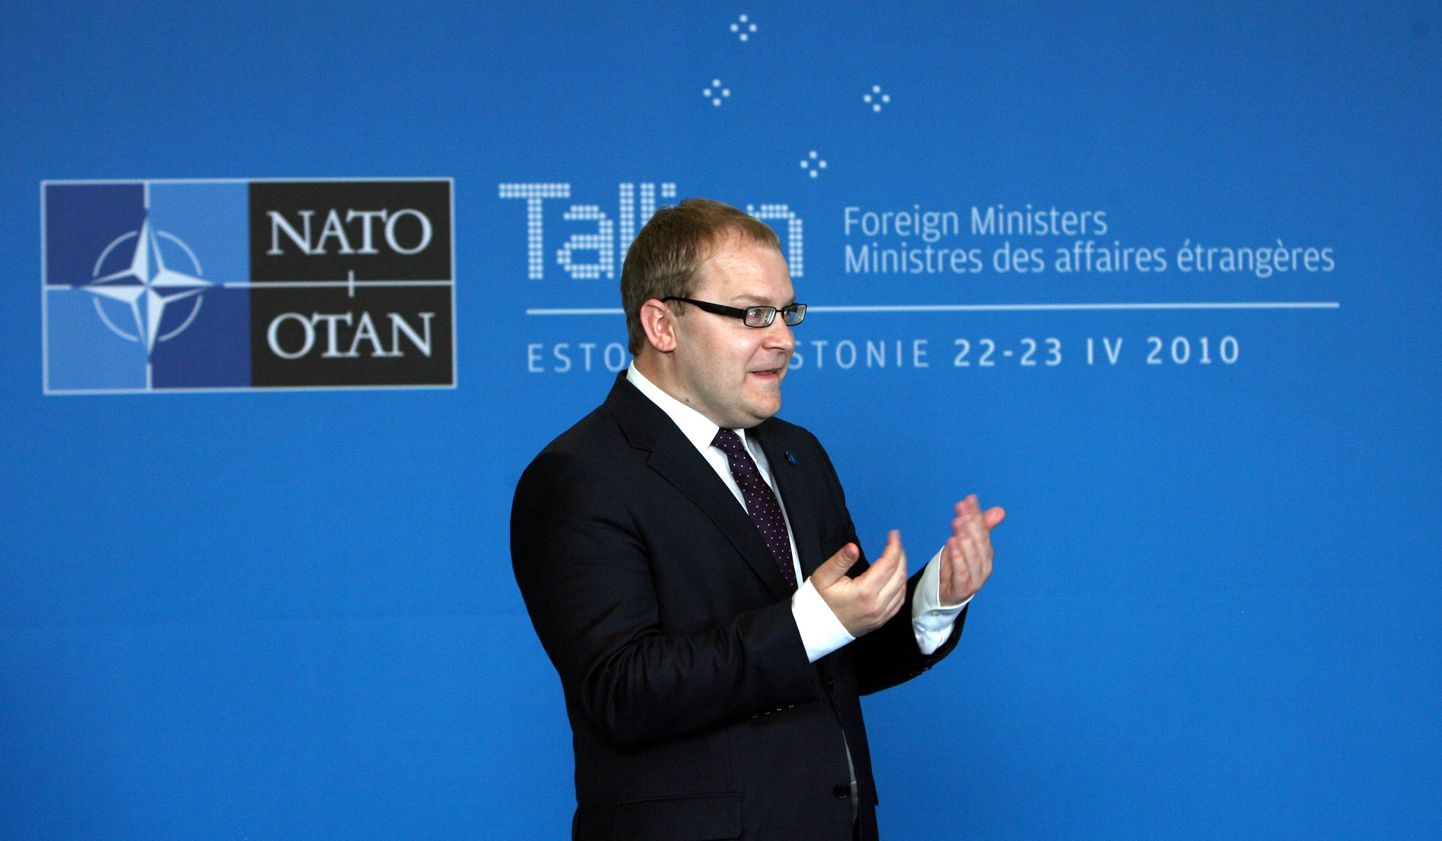 Глава МИД Эстонии Паэт призывает коллег из НАТО подойти ближе на саммитет в Таллинне